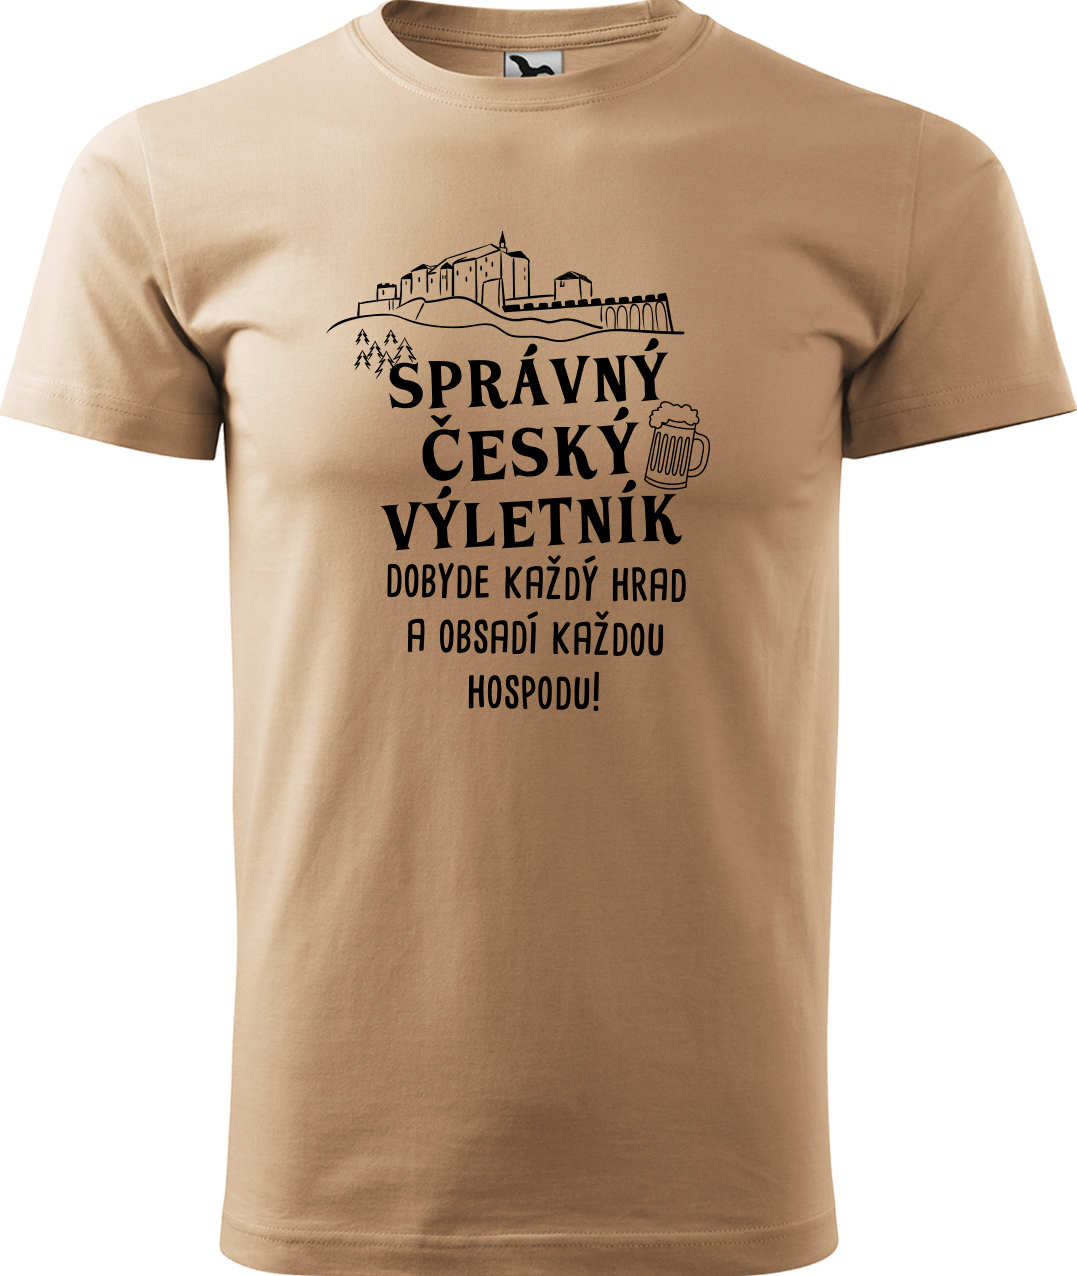 Pánské cestovatelské tričko - Správný český výletník Velikost: XL, Barva: Písková (08), Střih: pánský